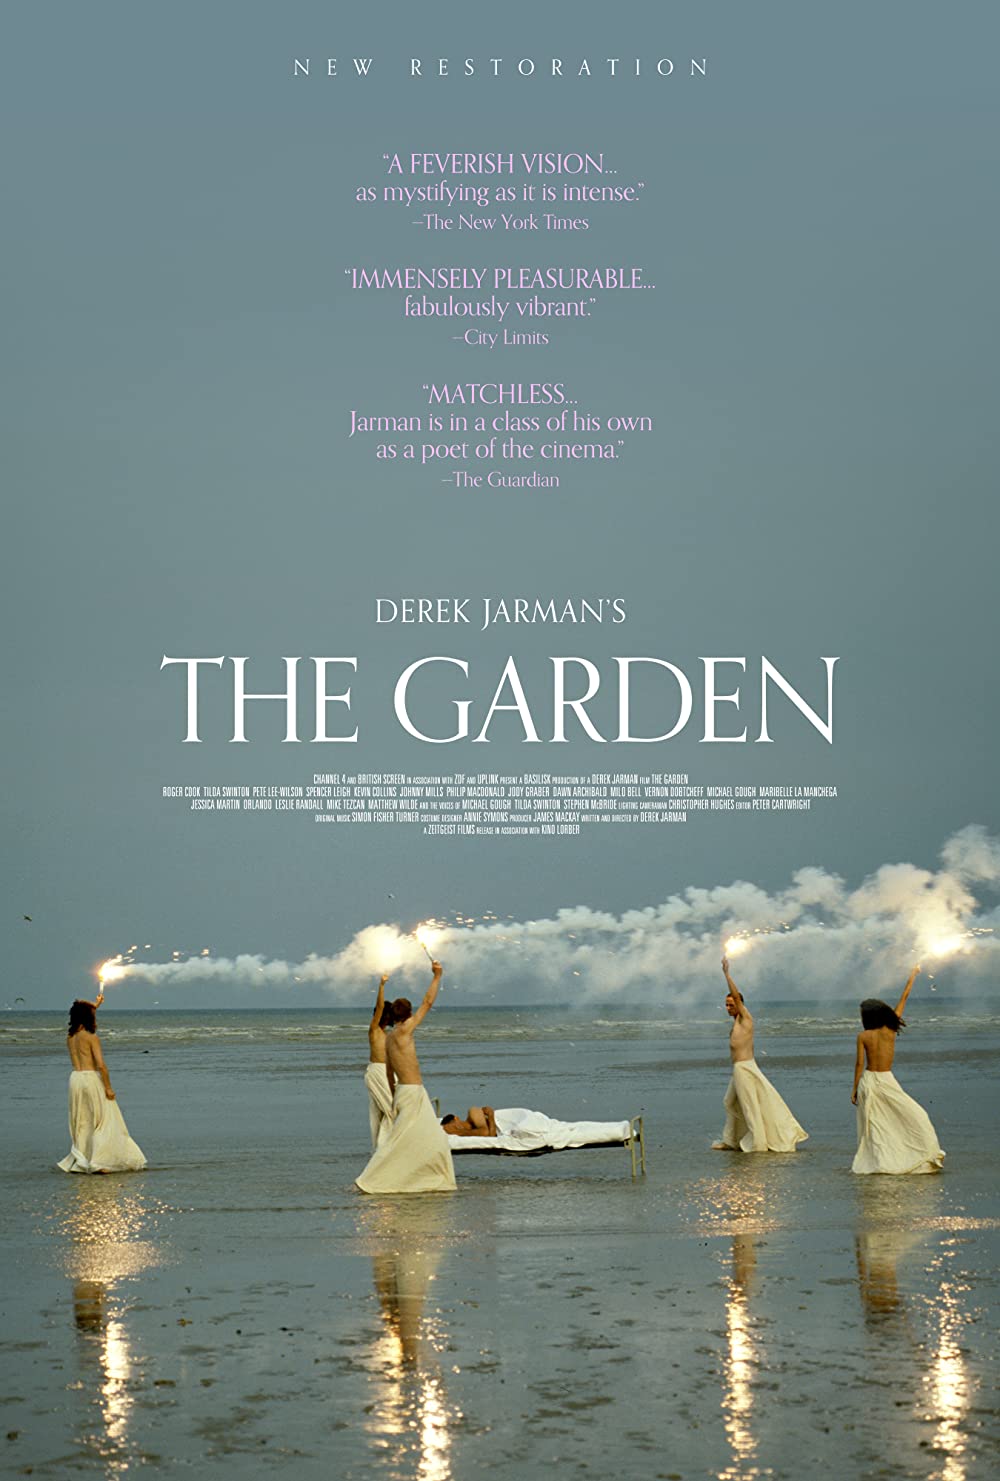 Filmbeschreibung zu The Garden